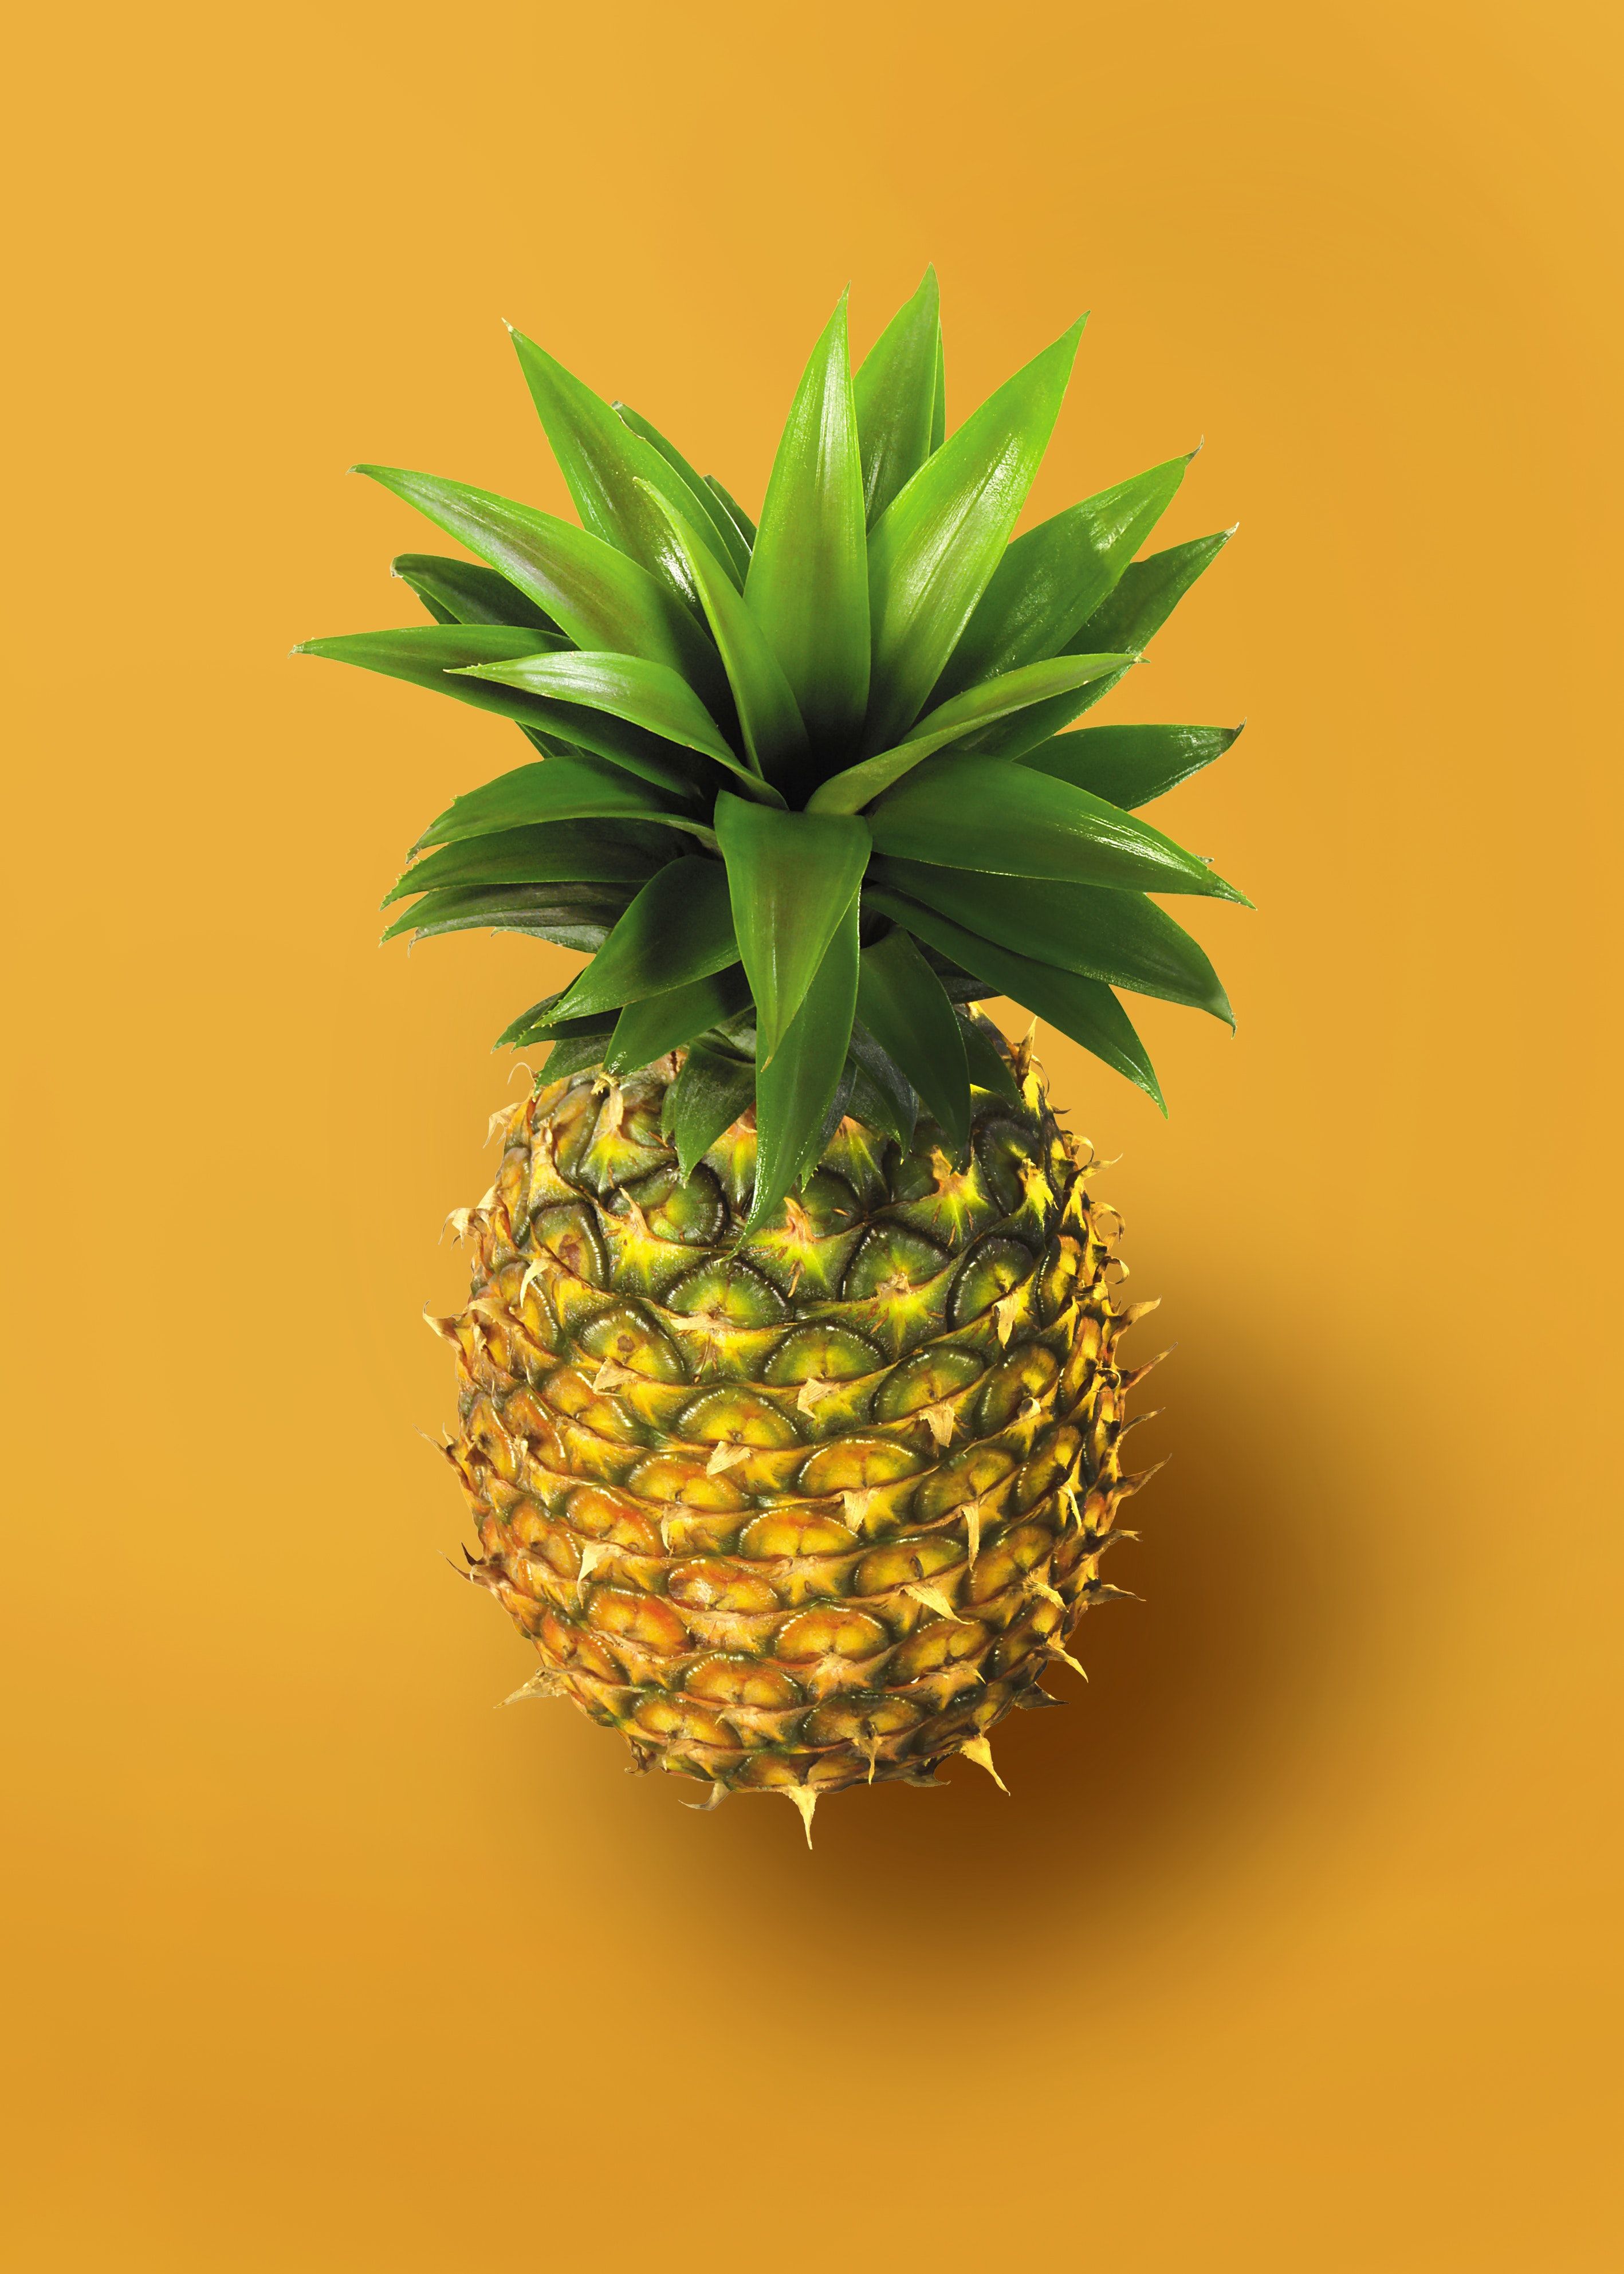  Obst Hintergrundbild 2835x3969. Kostenloses Foto zum Thema: ananas, frisch, frucht, gelbem hintergrund, gesund, nahansicht, nahrhaft, organisch, tropische frucht, vertikaler schuss